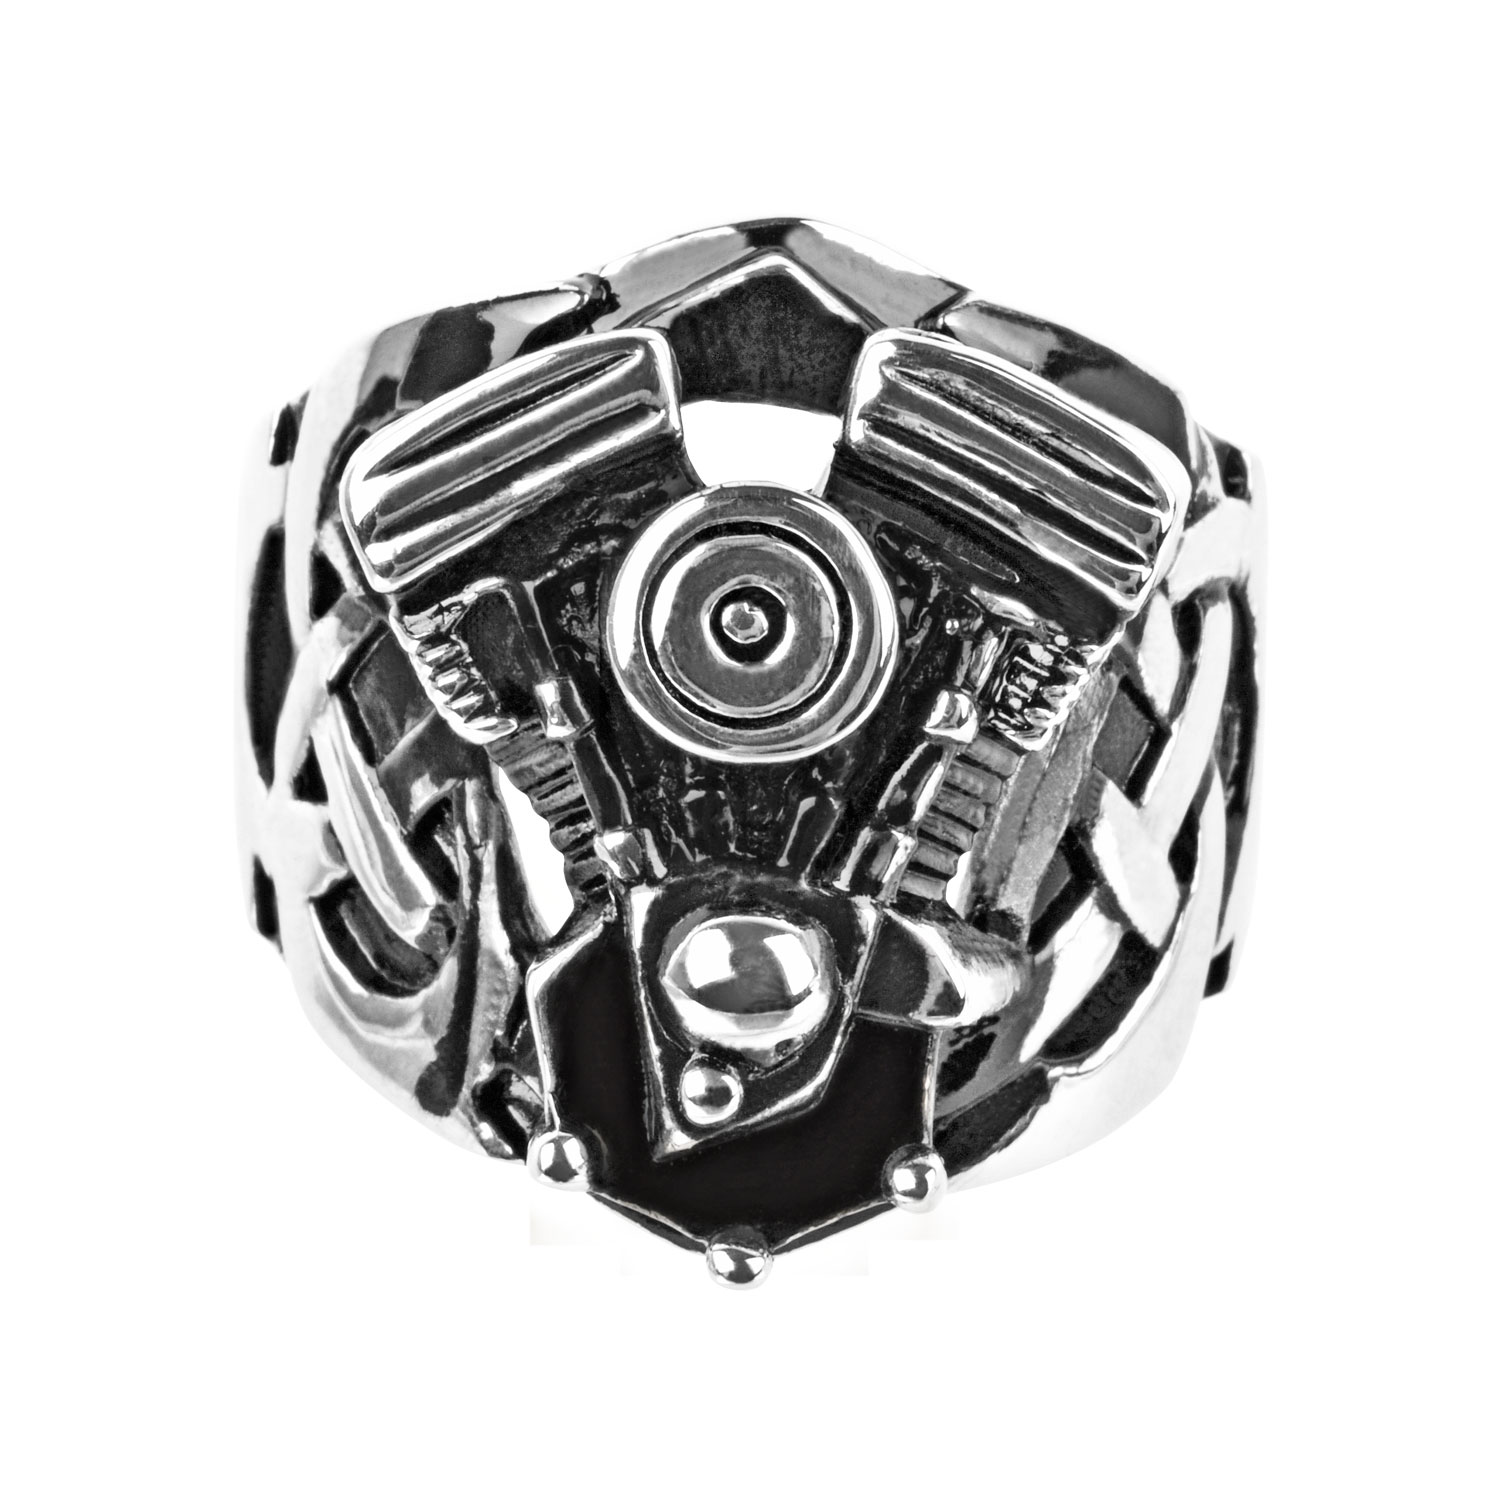 Black Oxidized Ring with Large Engine Look Image 2 K. Martin Jeweler Dodge City, KS